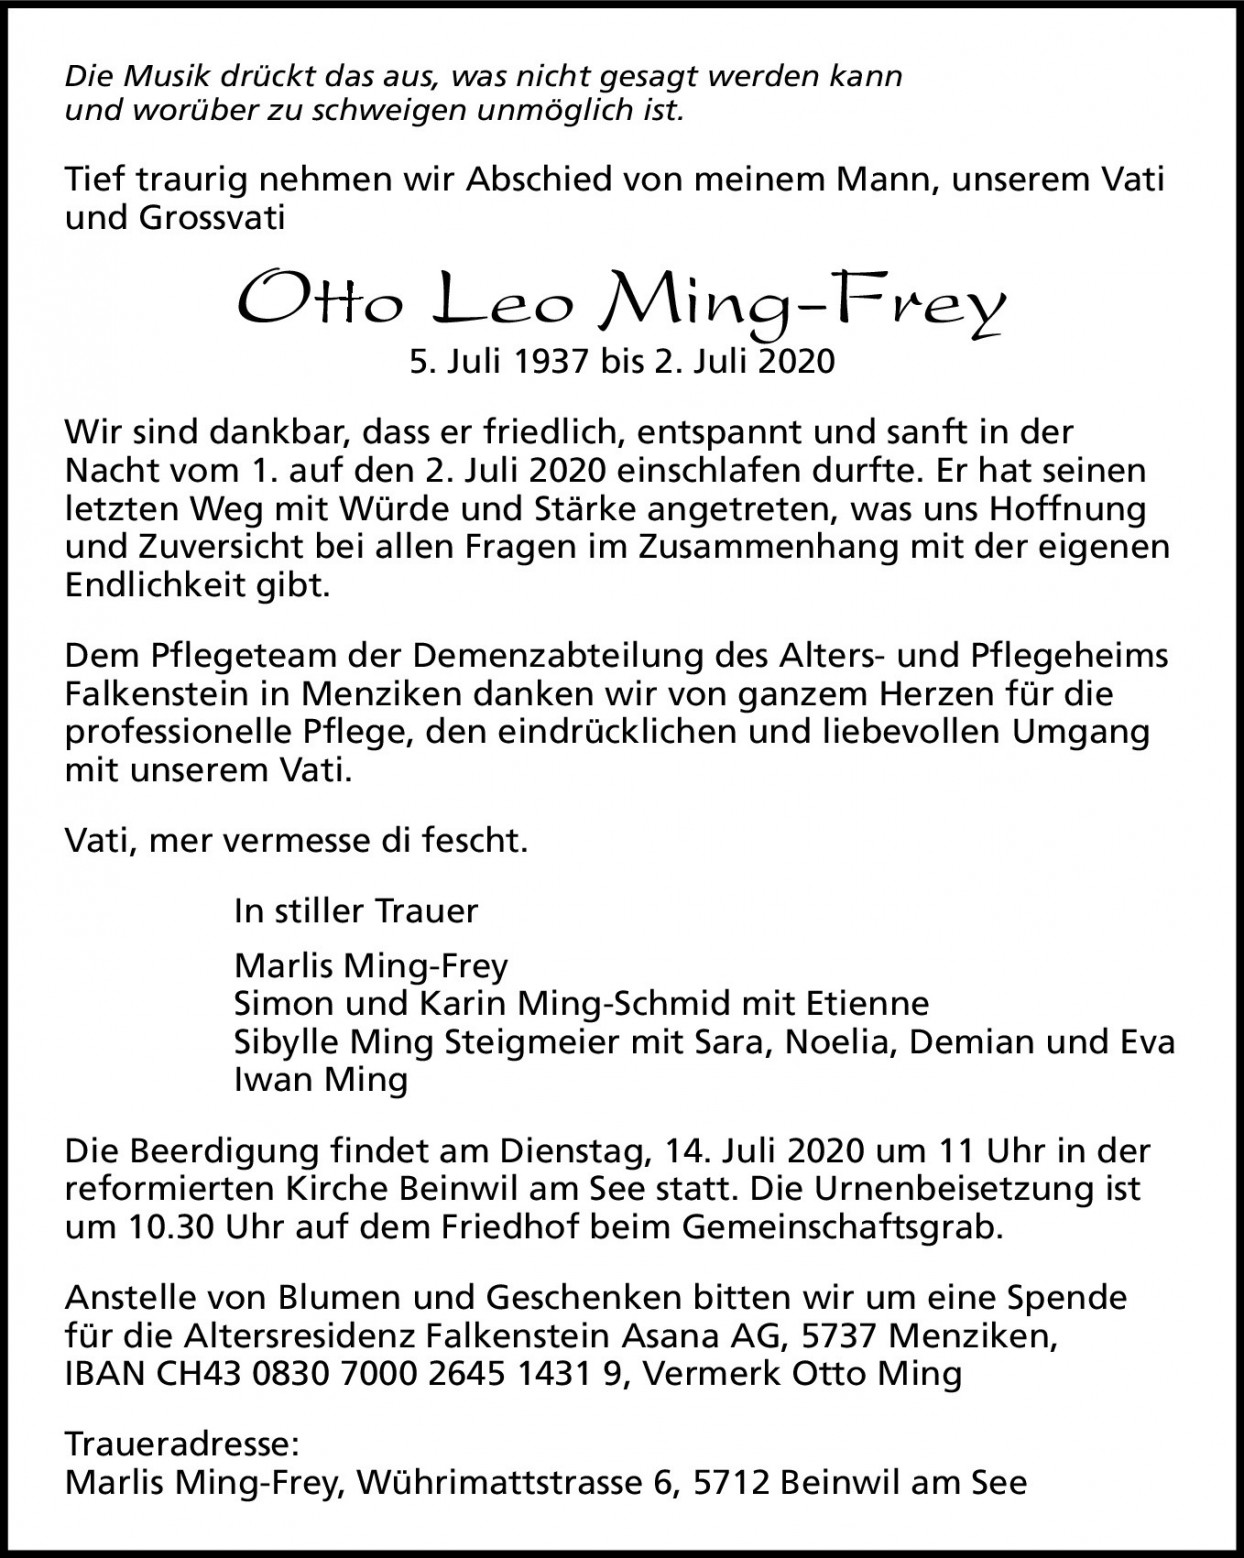 Otto Leo Ming-Frey